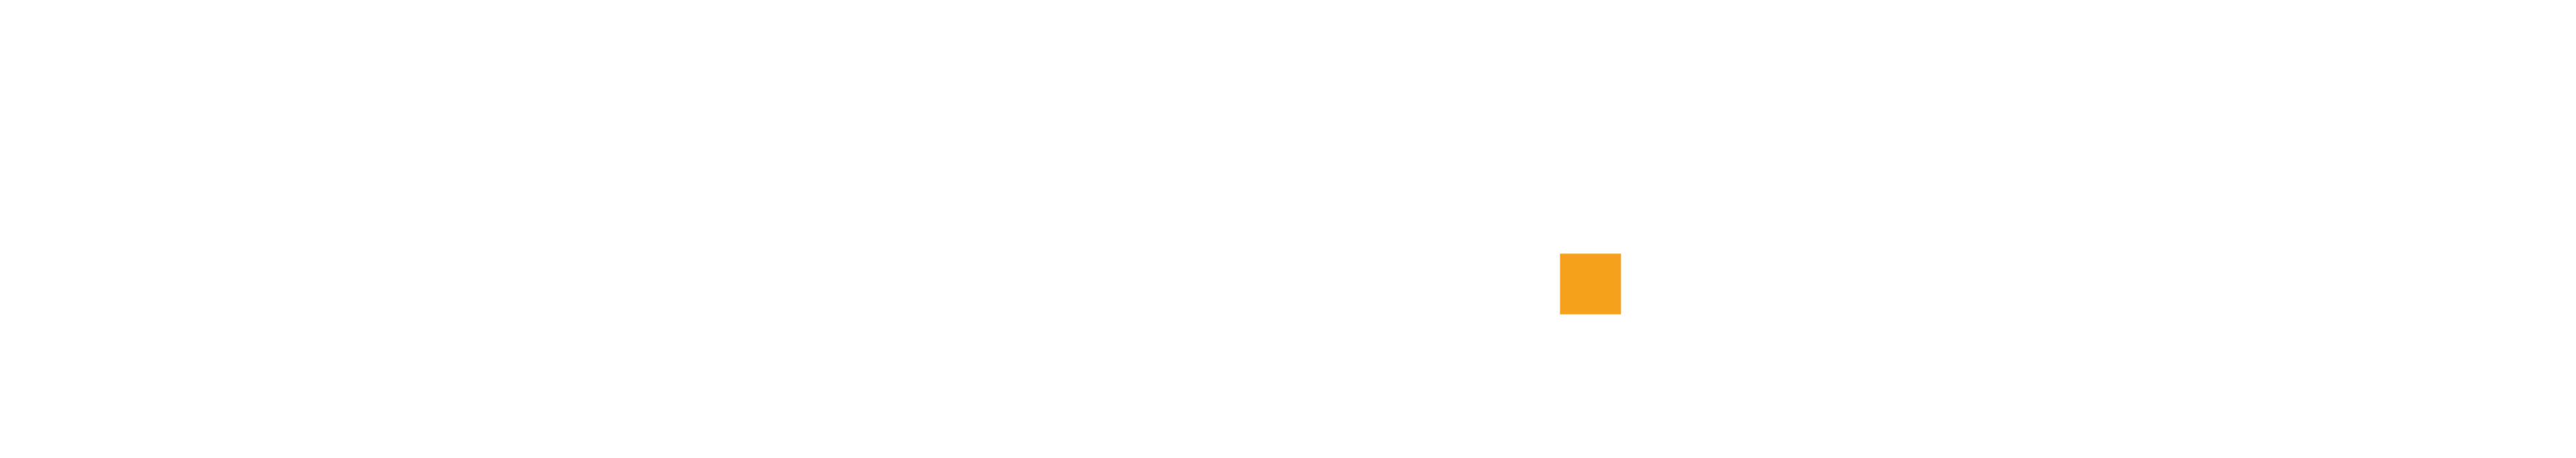 Boxabl Logo